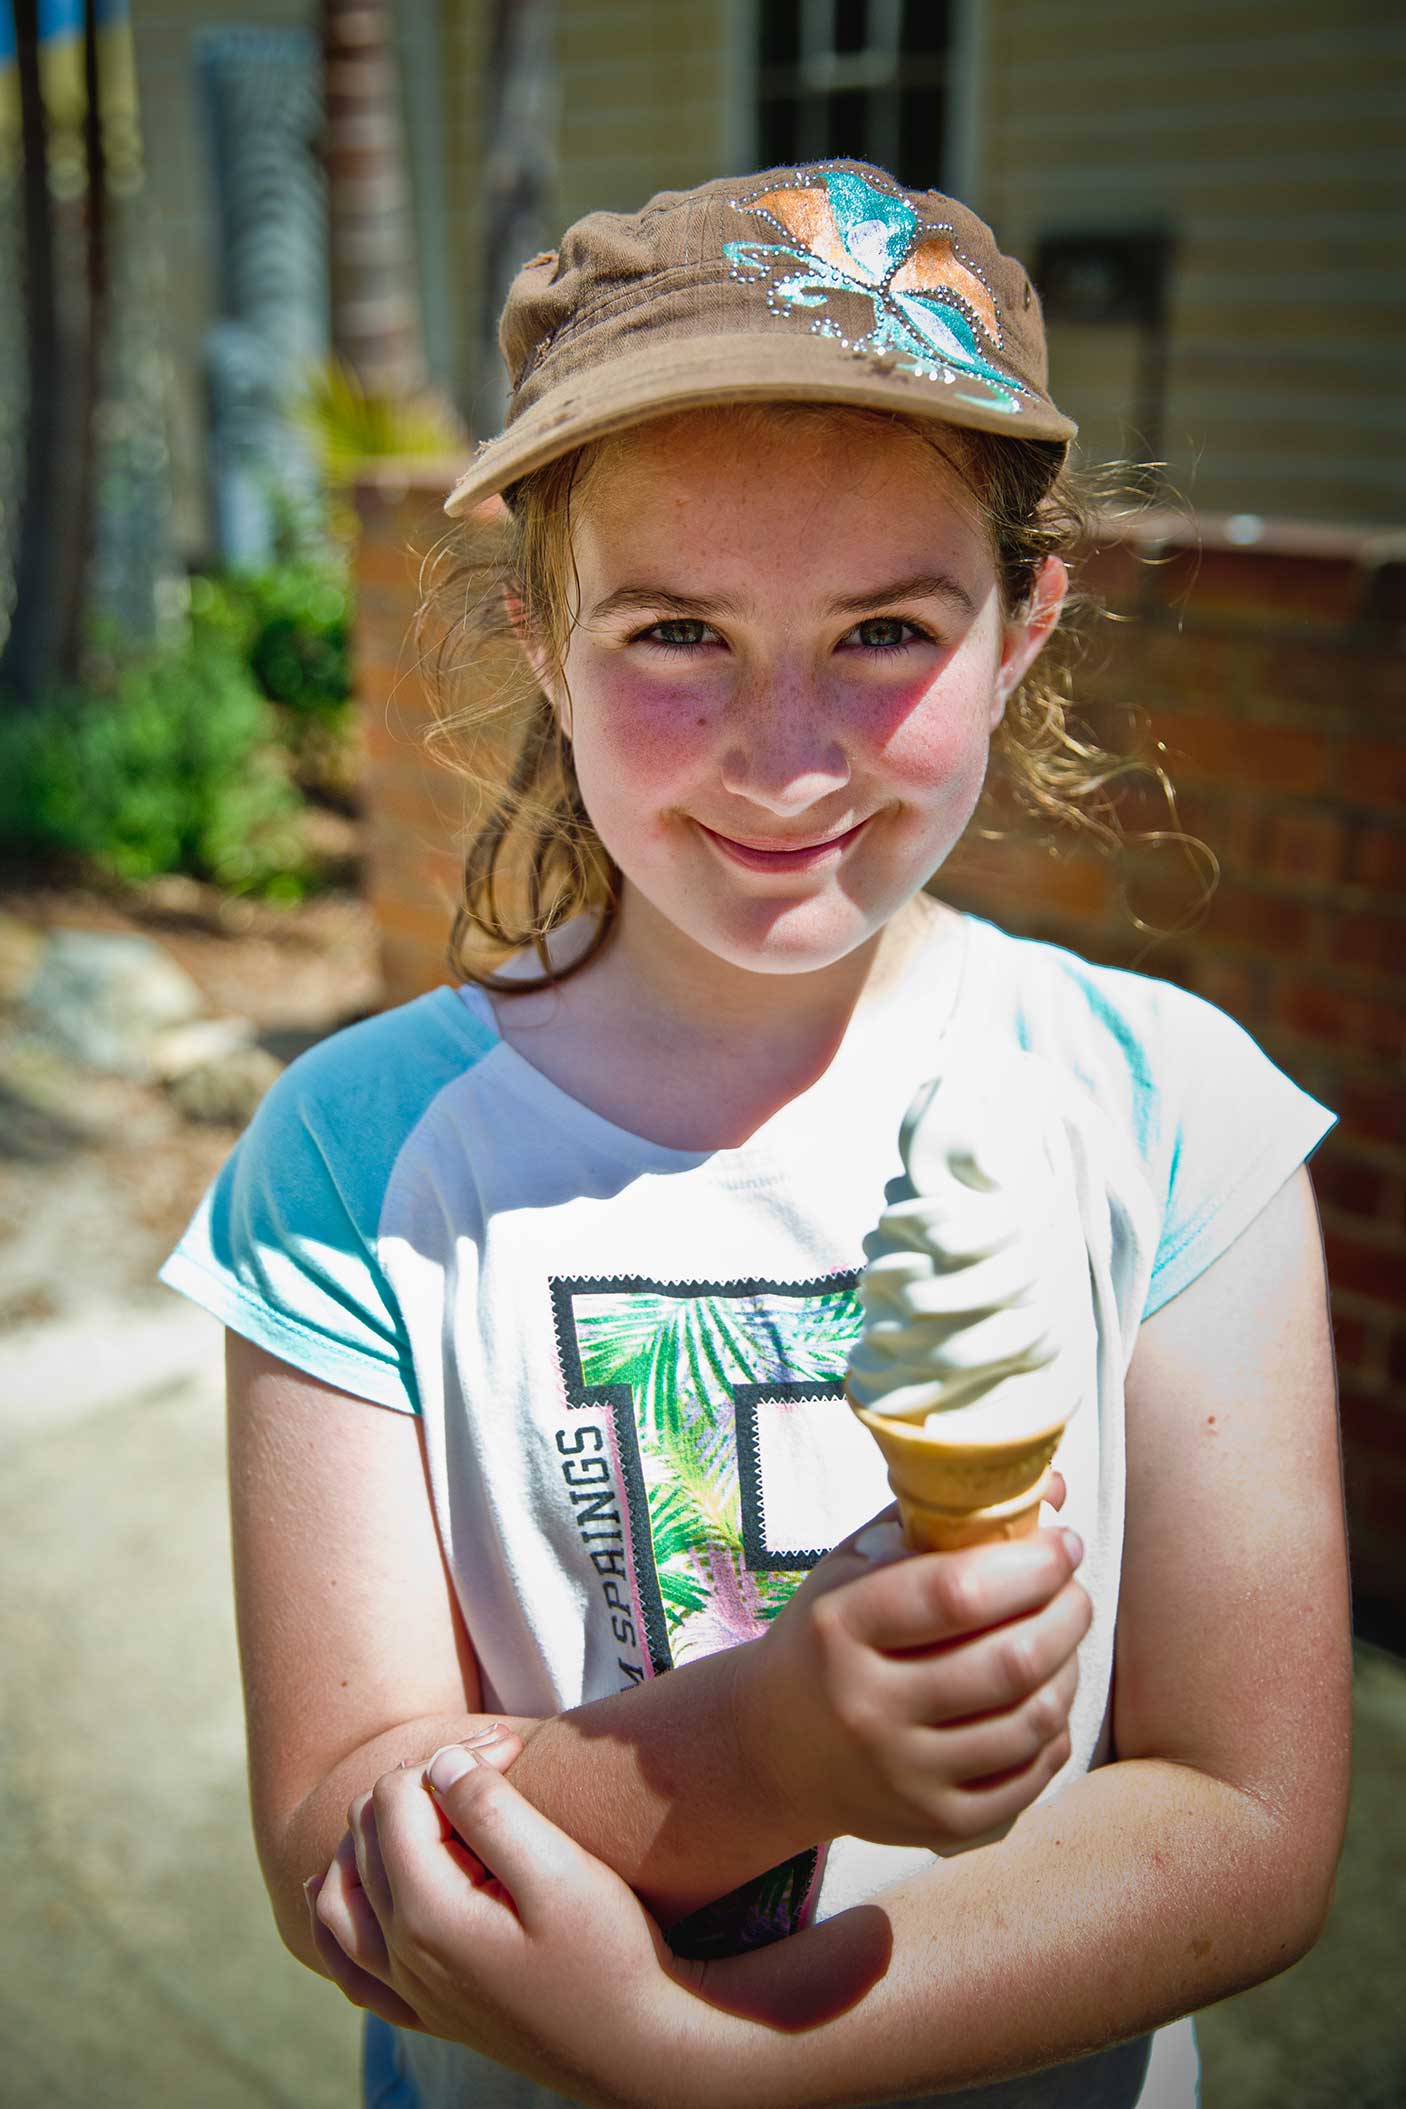 A girl holding an icecream